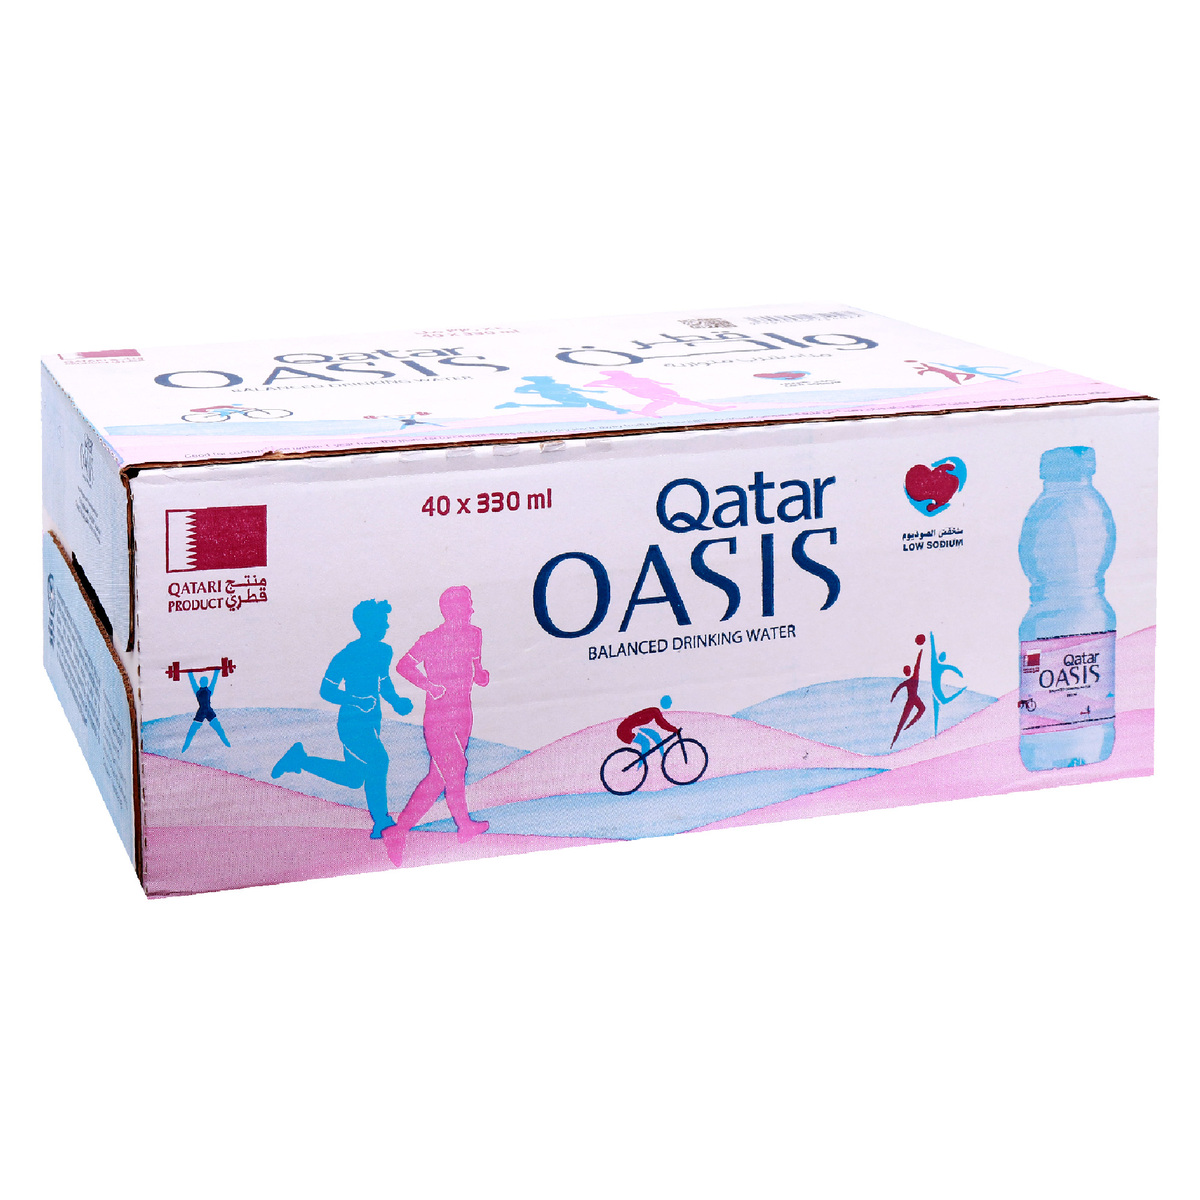 Qatar Oasis Balanced Drinking Water 24 x 330ml Online at Best Price ...